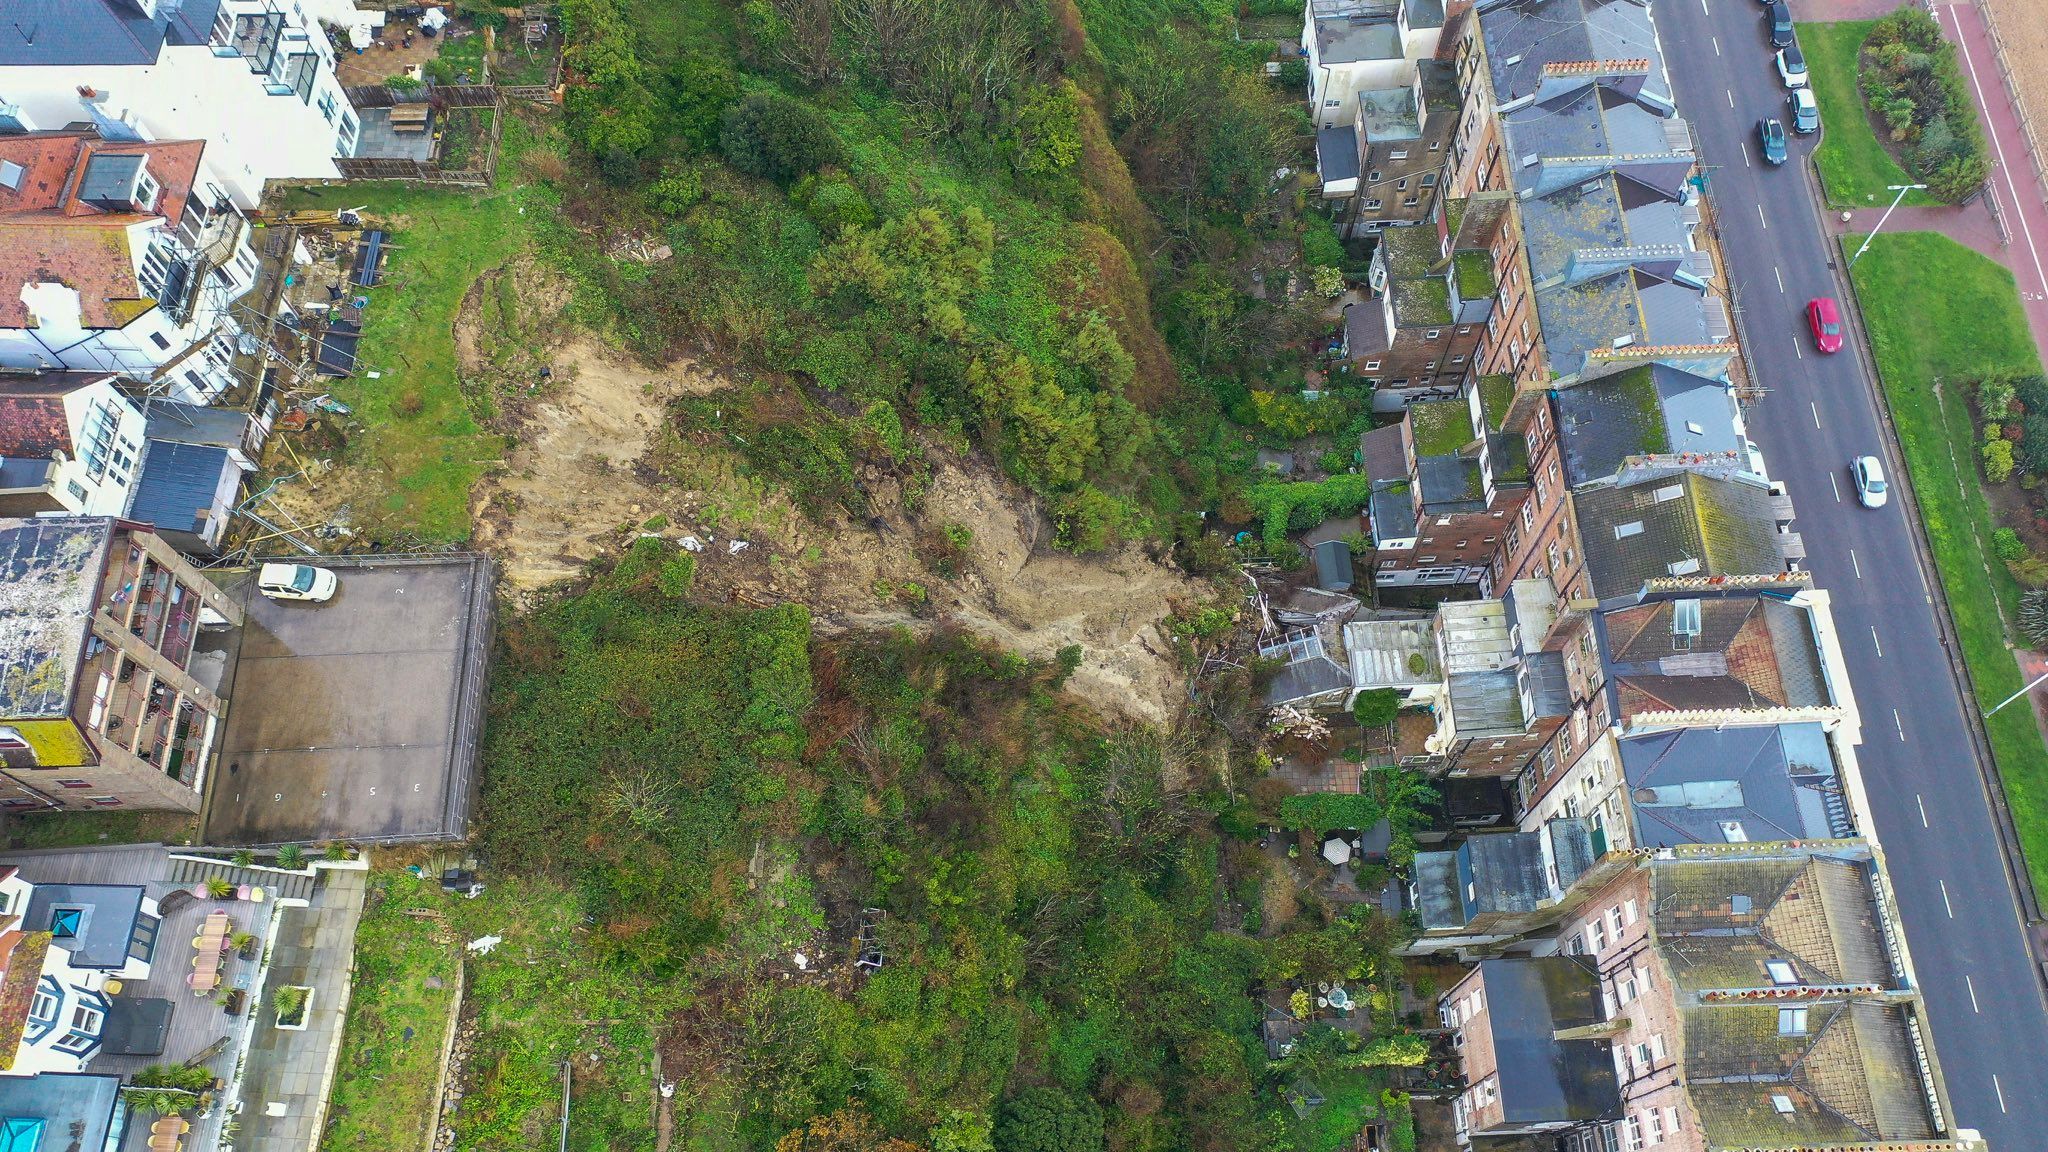 Landslide damage